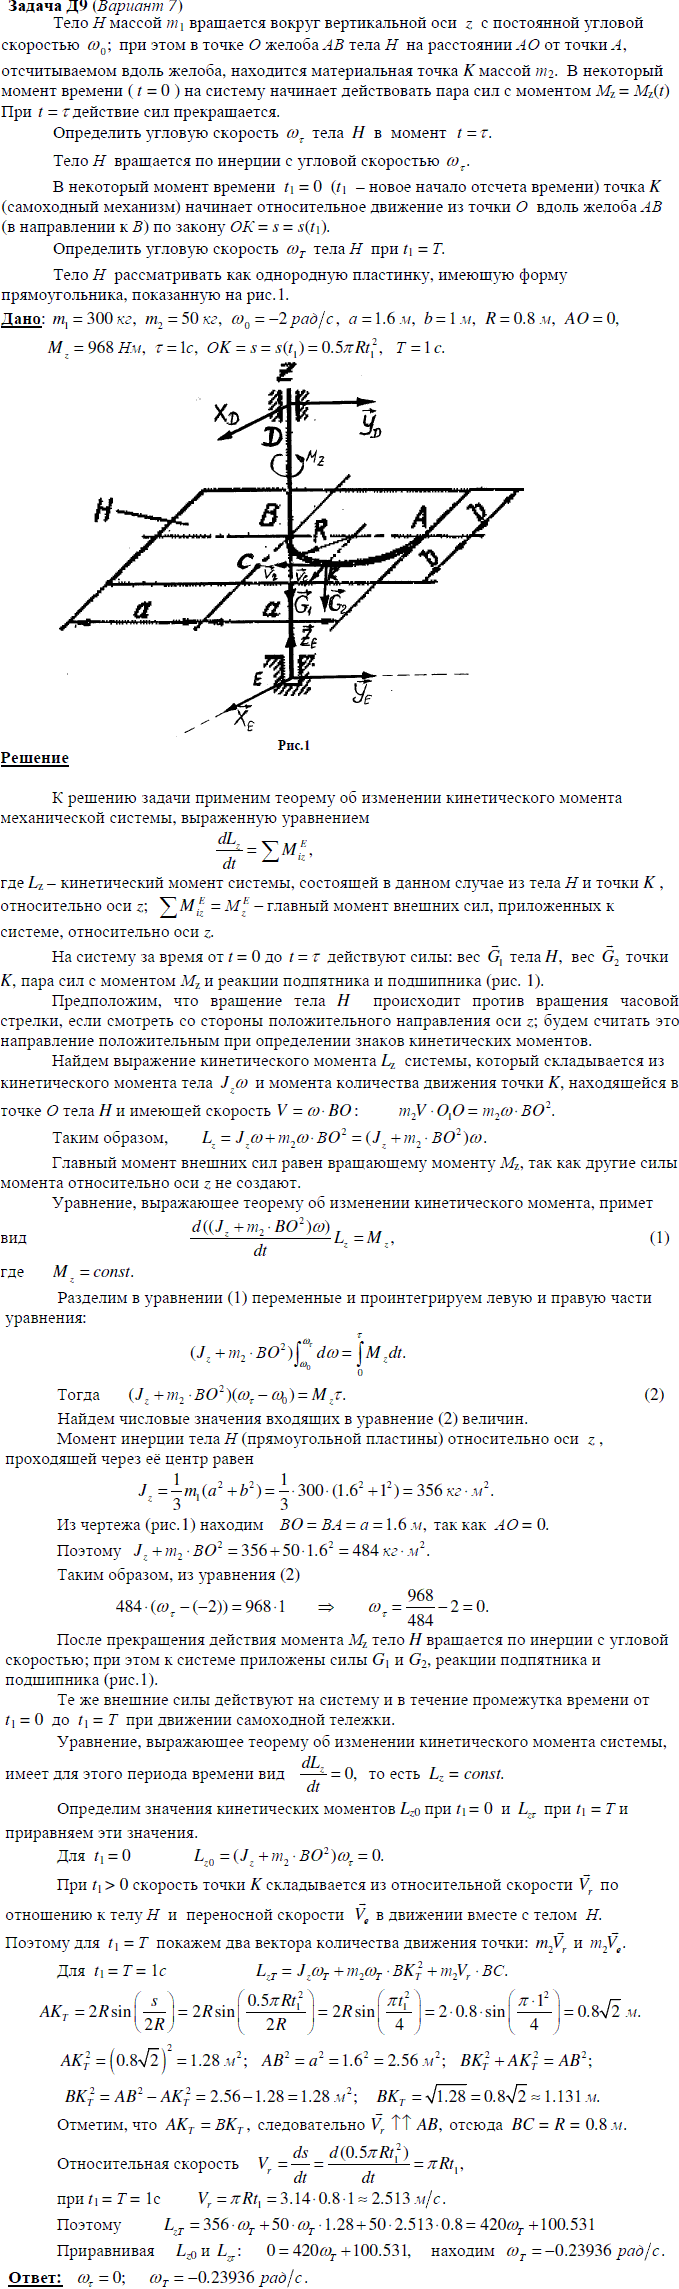 Яблонский задание Д9..., Задача 14842, Теоретическая механика